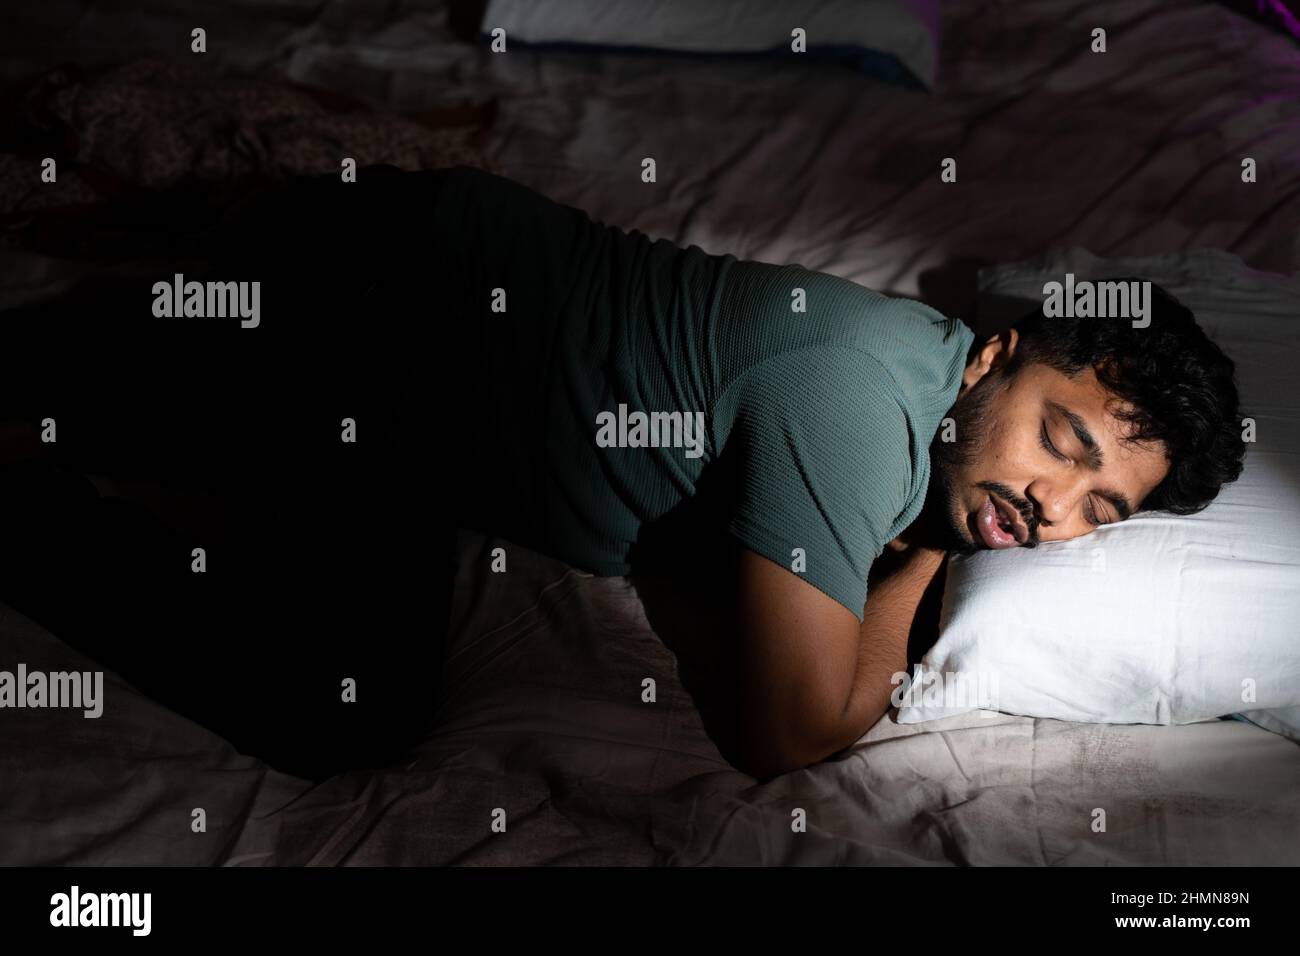 Junger Mann, der zur Zeit gut schlafen konnte - Konzept eines gesunden Lebensstils, Entspannung und Nickerchen Stockfoto